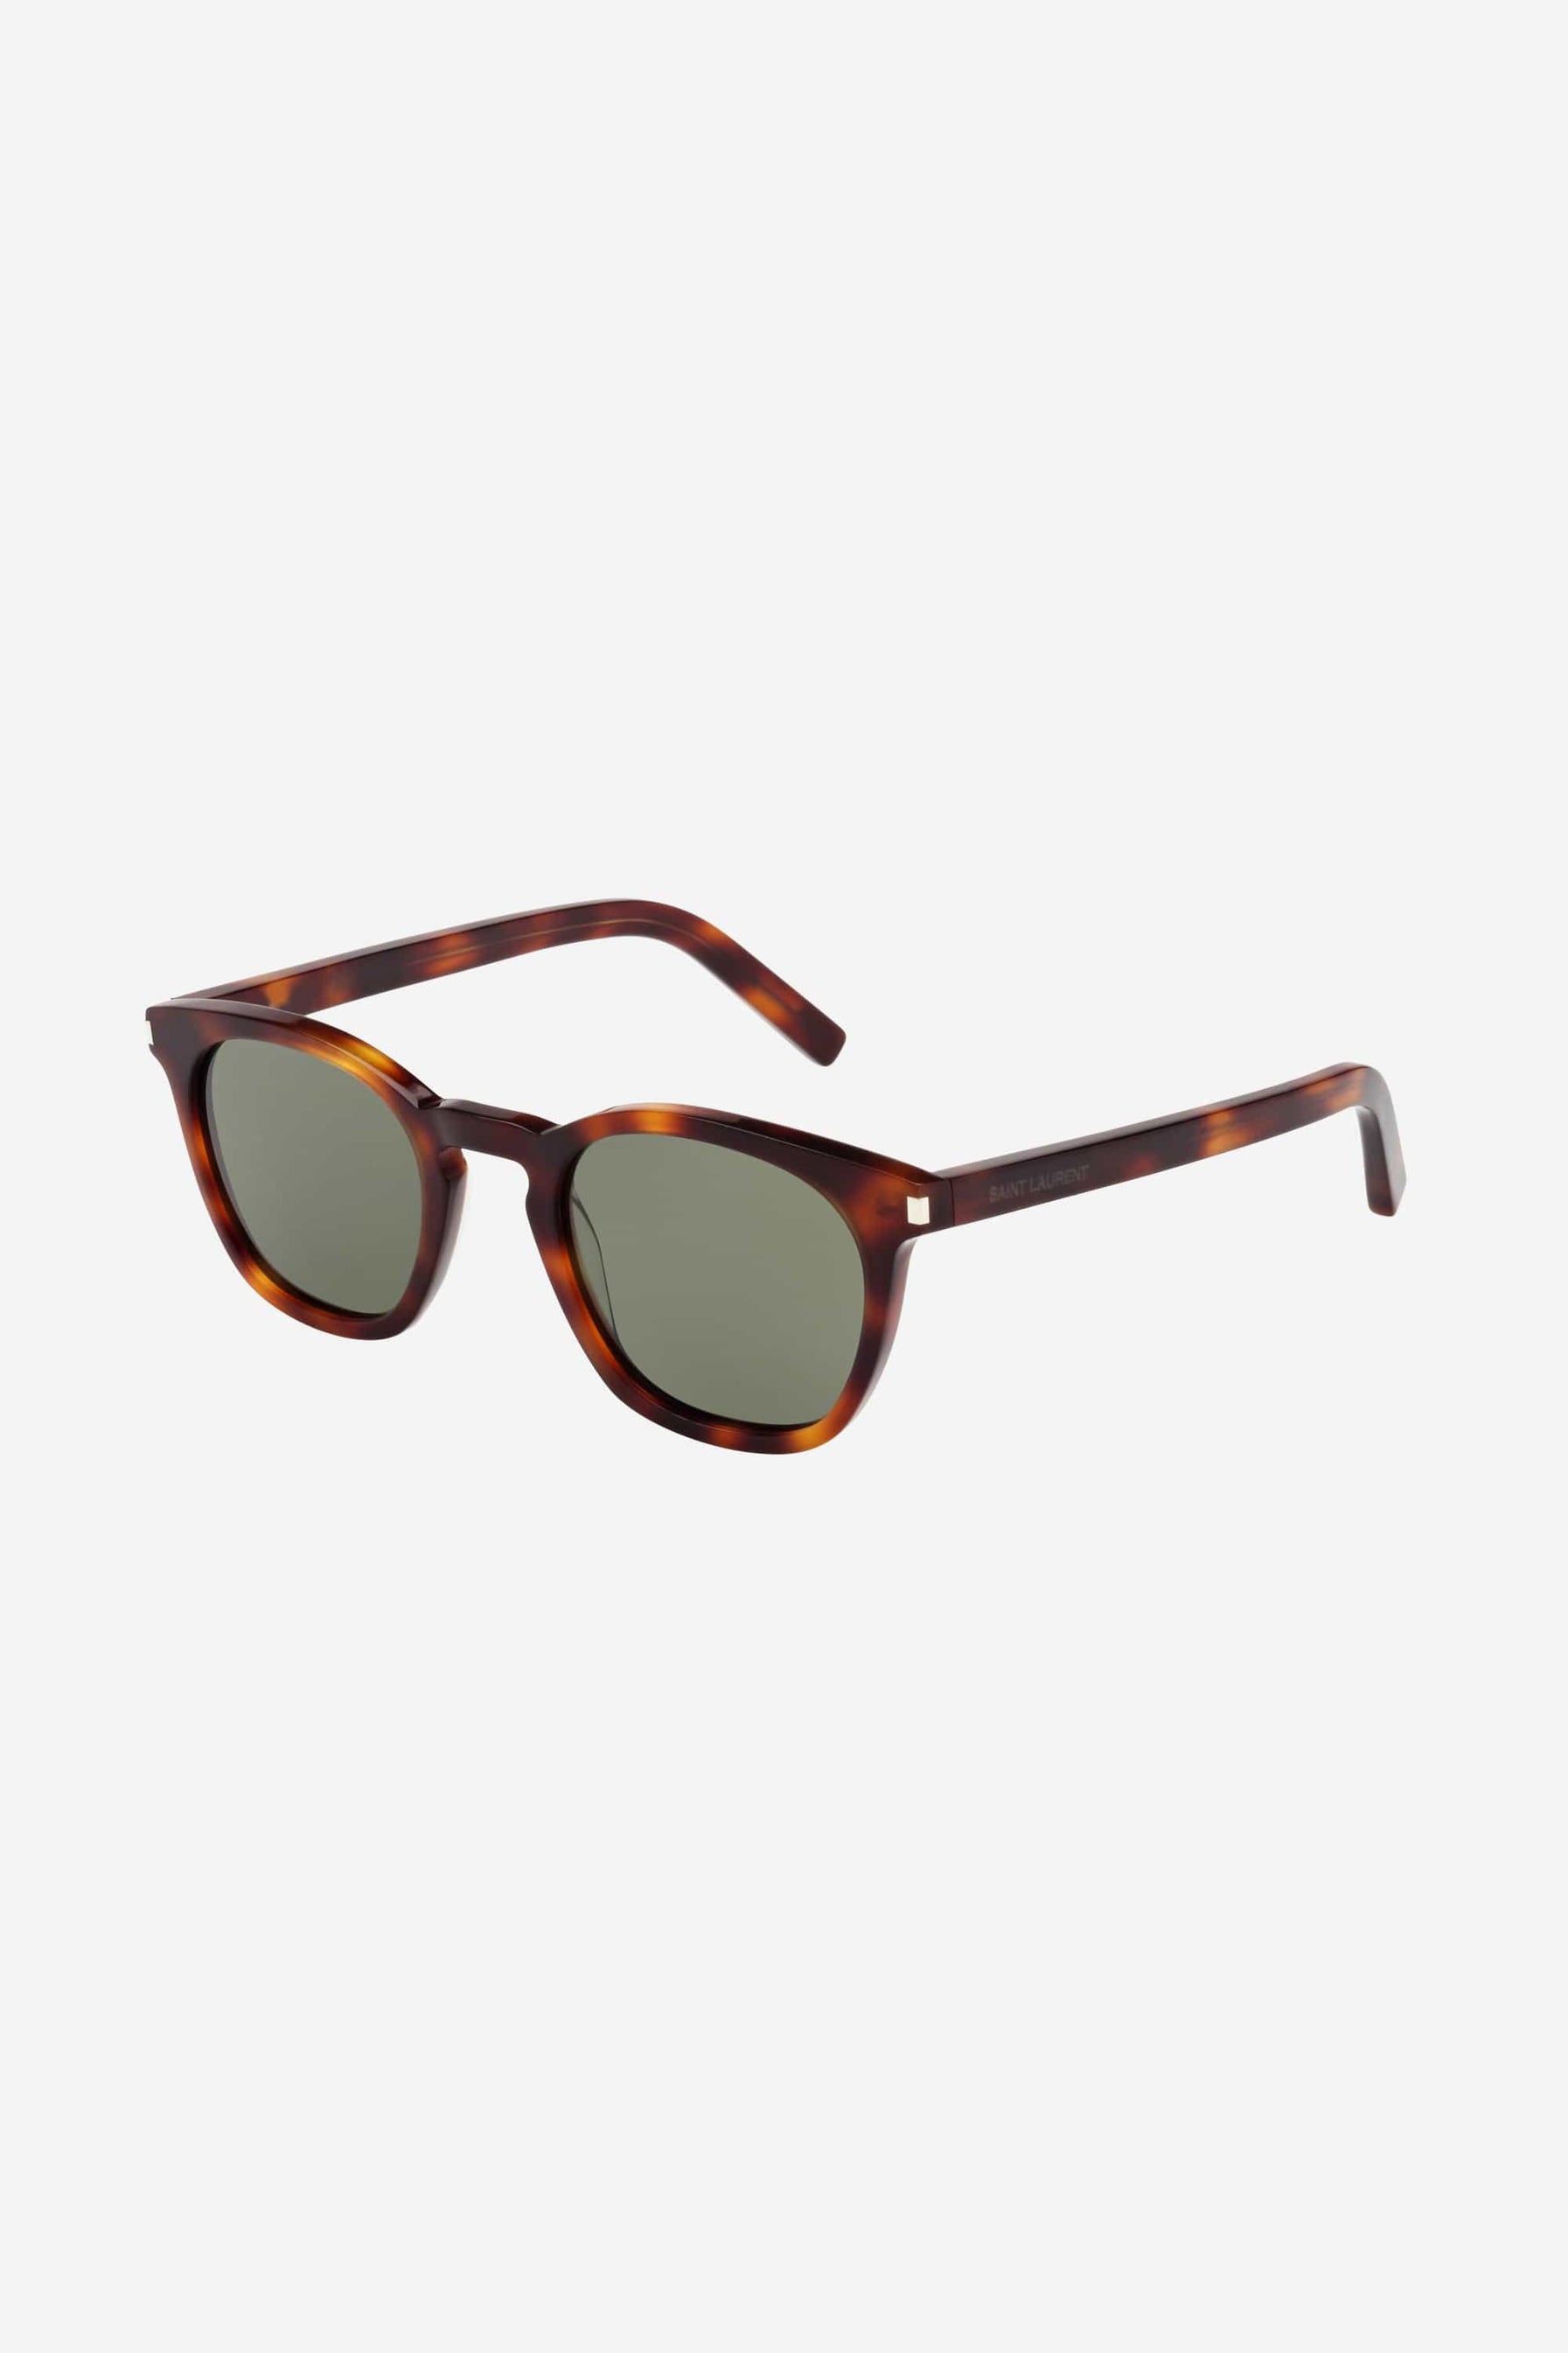 Saint Laurent UNISEX iconic SL28 havana sunglasses - Eyewear Club